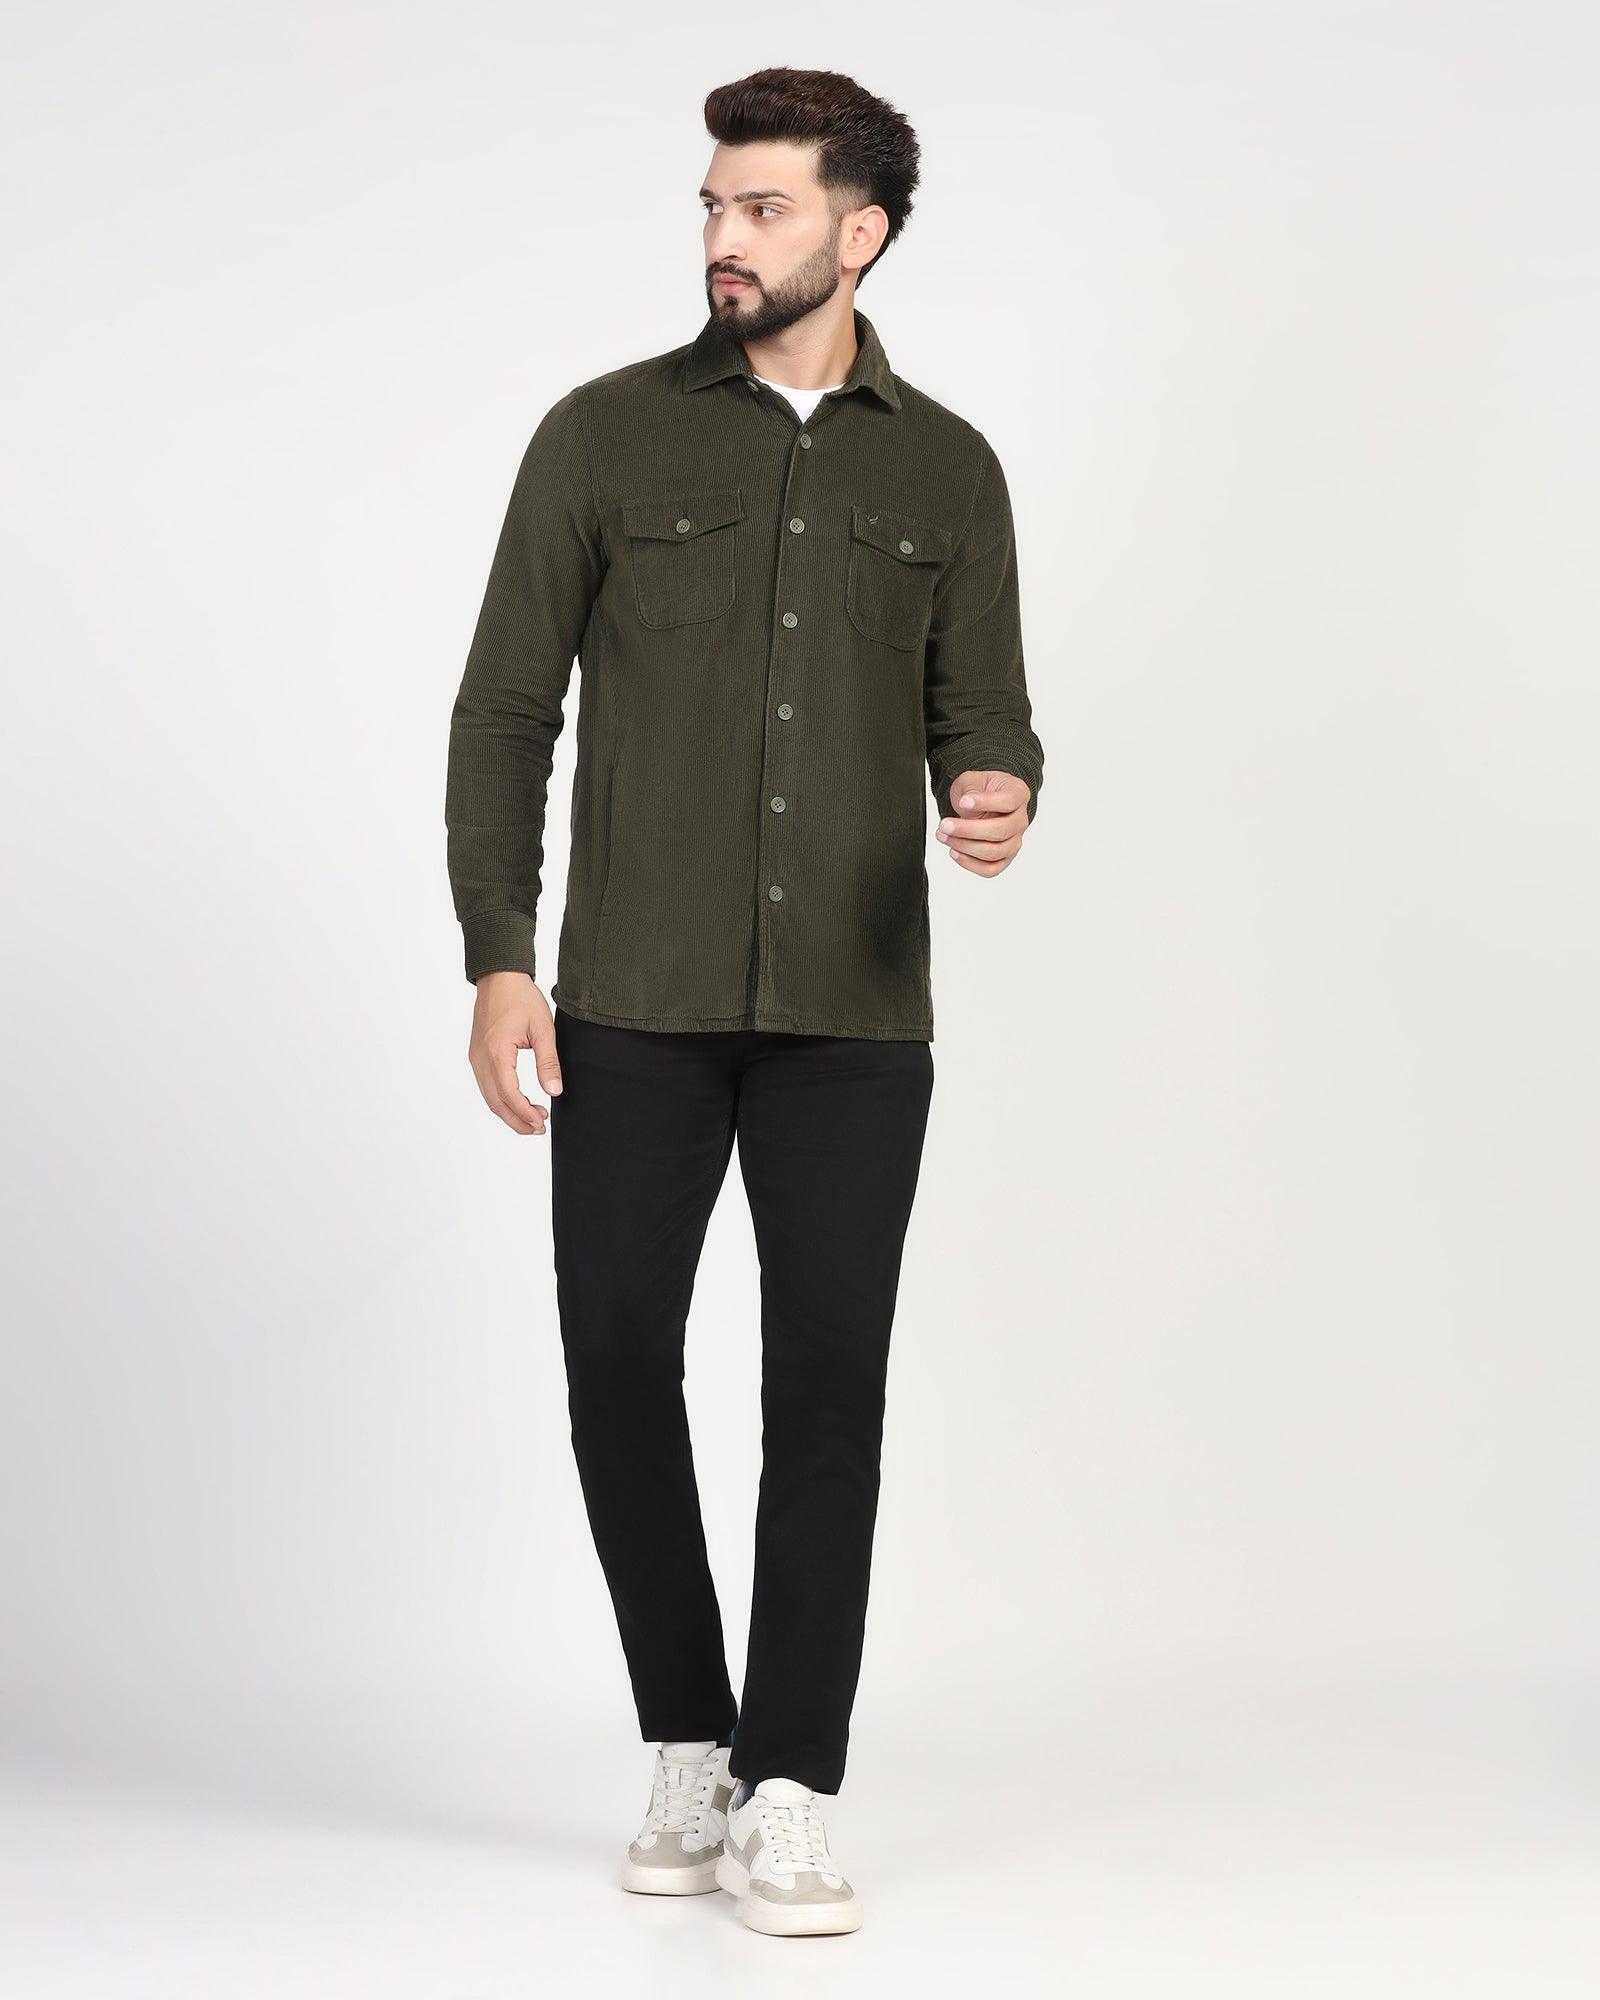 Capani Green Slim Fit Long Sleeve Double Pocket Cotton Shirt | BOJONI